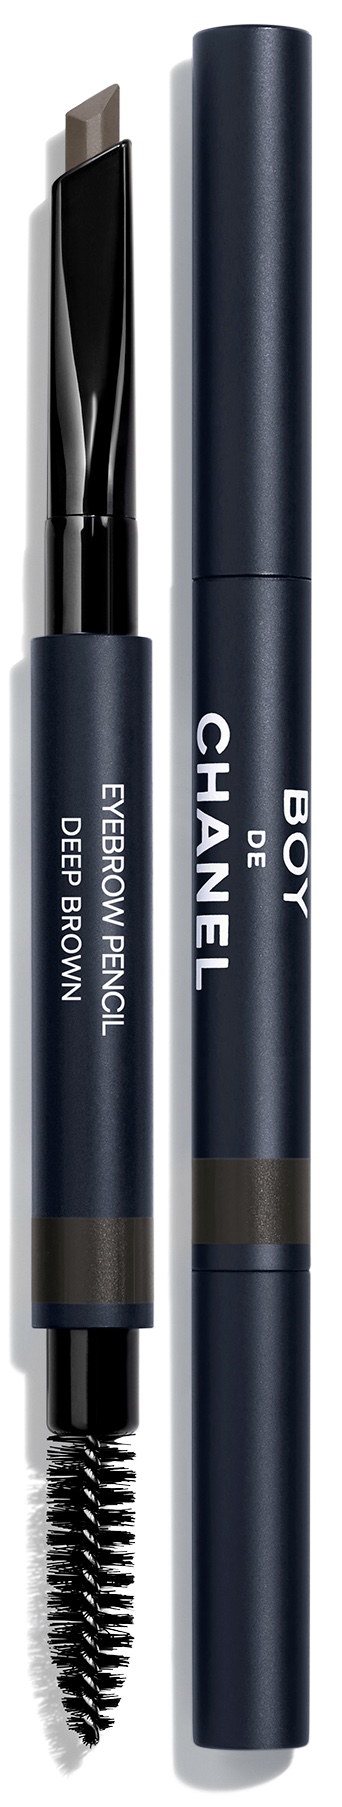 Boy de Chanel Eyebrow Pencil